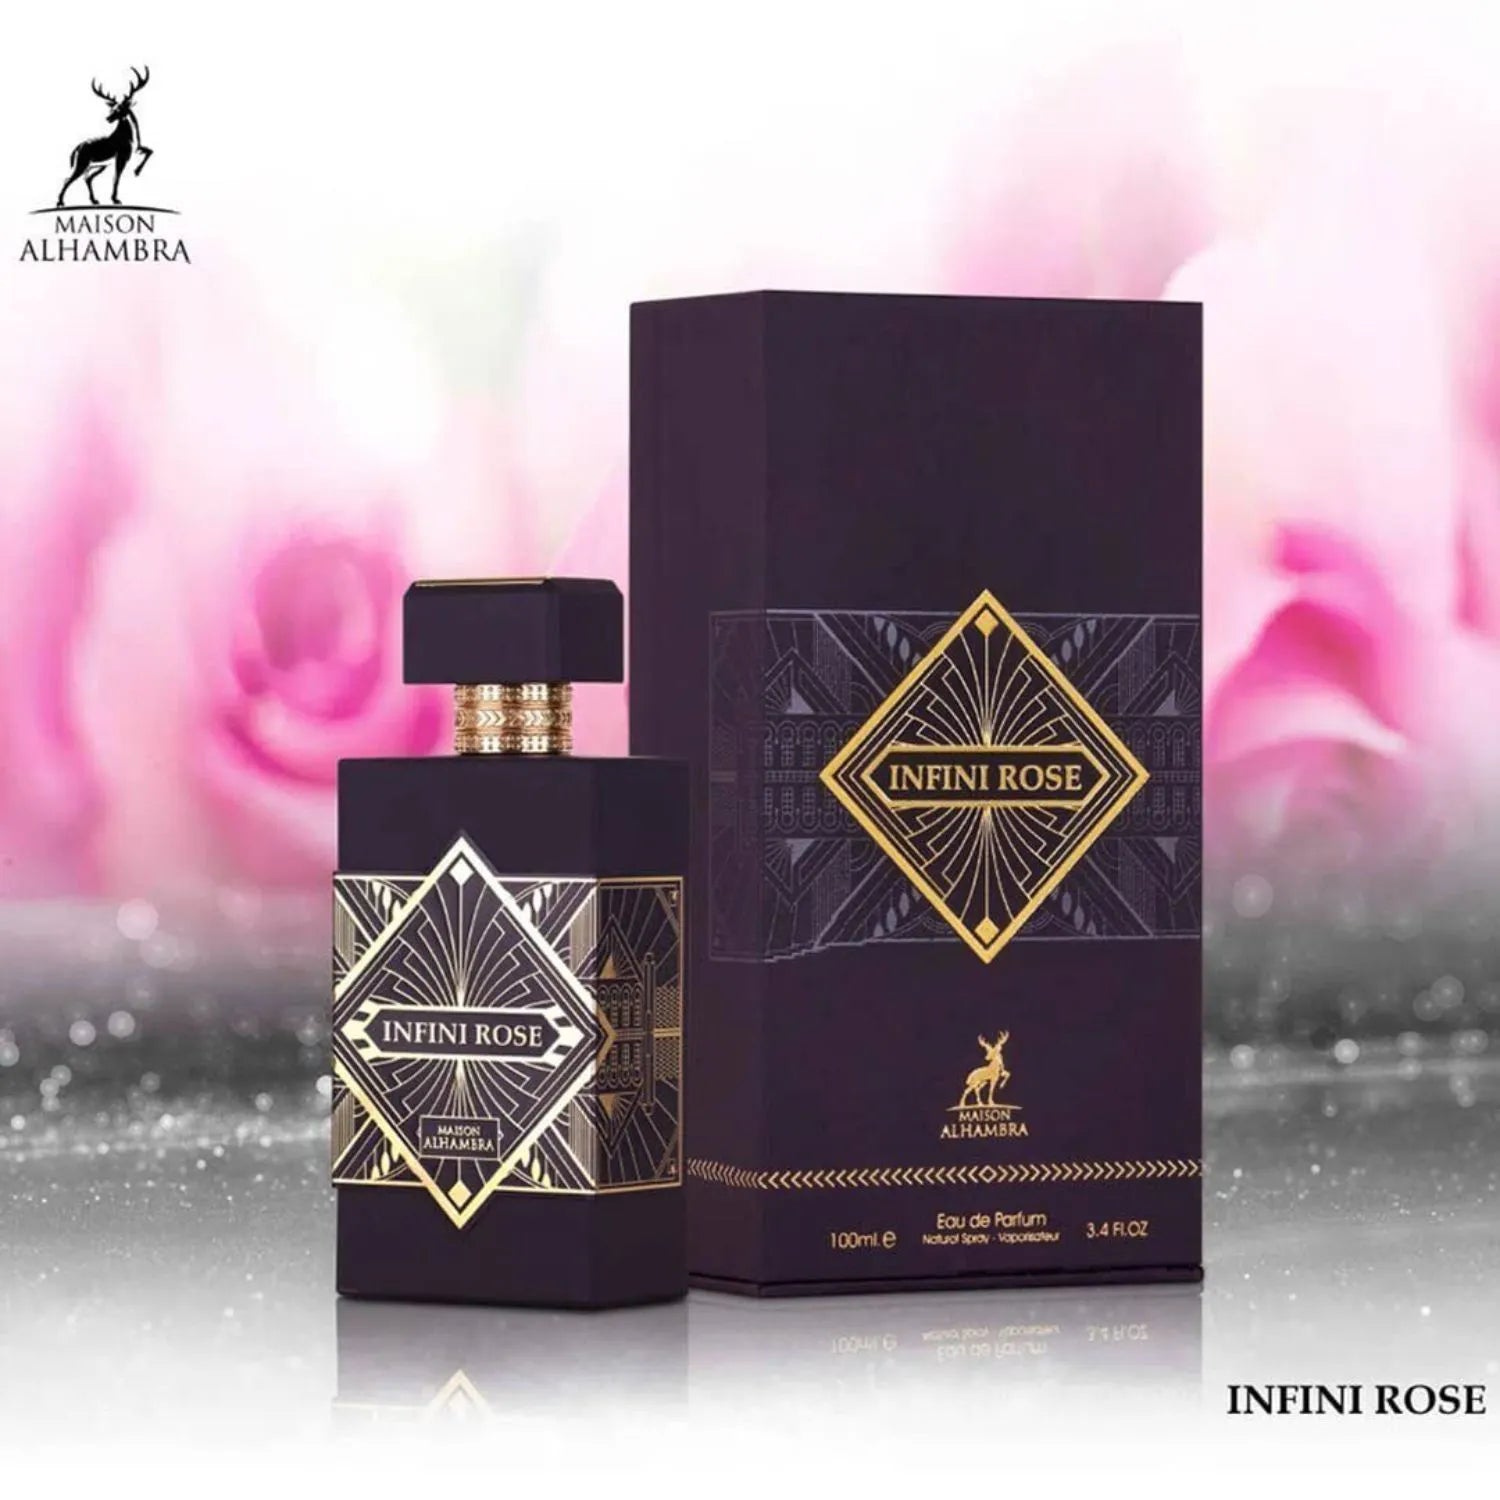 Infini Rose Perfume Box